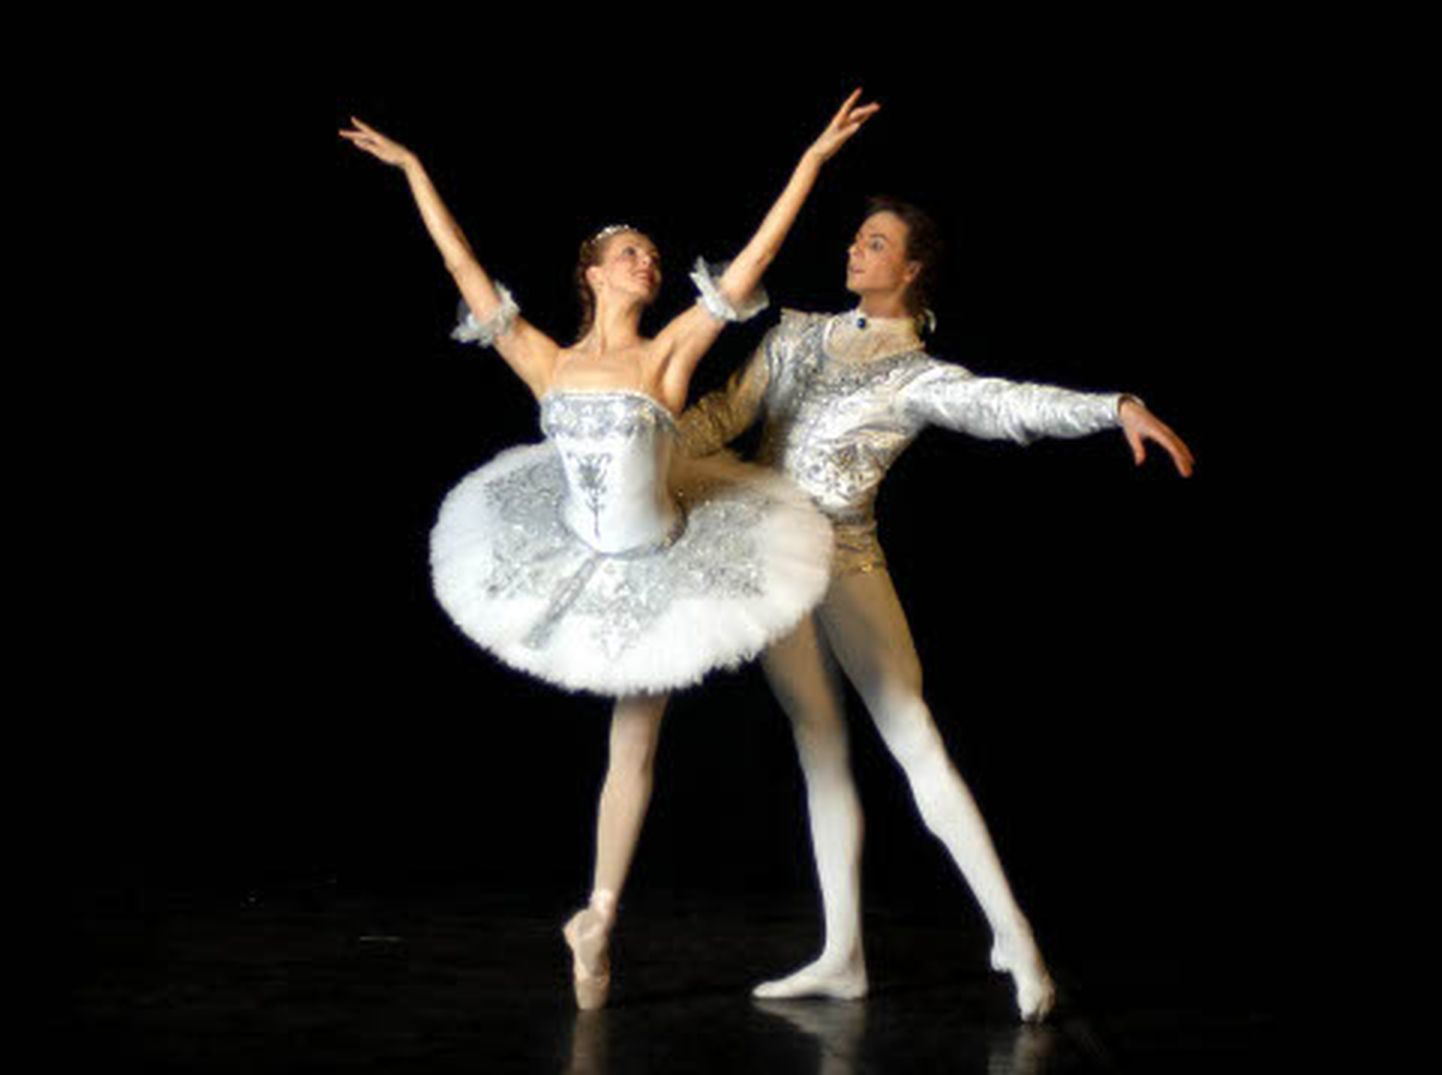 Balletiartistid Irina Perren ja Marat Šemiunov on varem Eestis esinenud. Eeloleval klassikalise balleti õhtul esitab Šemiunov koos Jekaterina Bortšenkoga "Adagio" Tšaikovski balletist "Luikede järv".